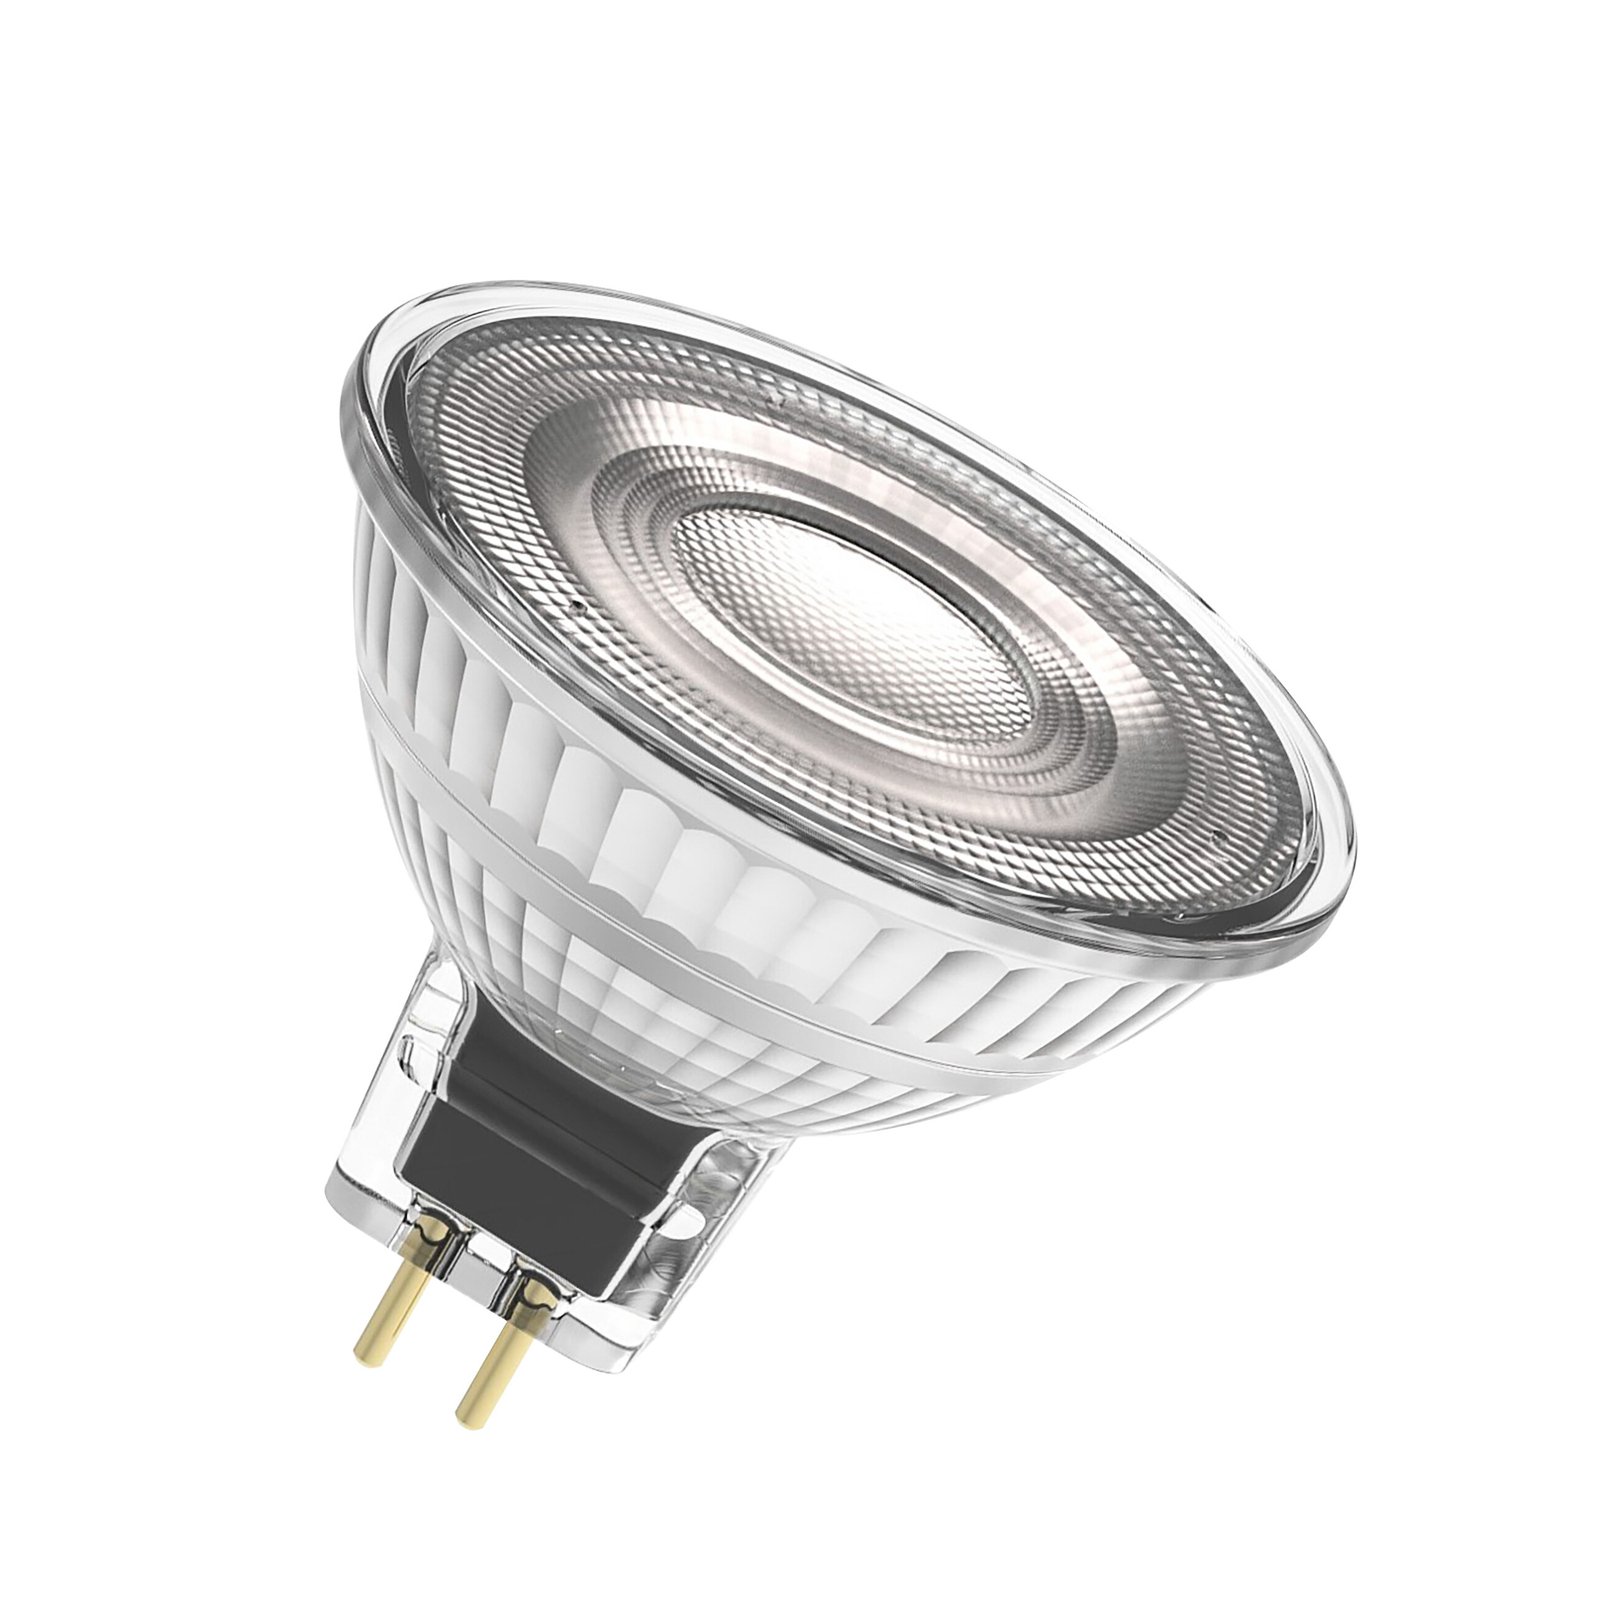 OSRAM LED reflektor, GU5.3, 2,6 W, 12 V, 2 700 K, 120°